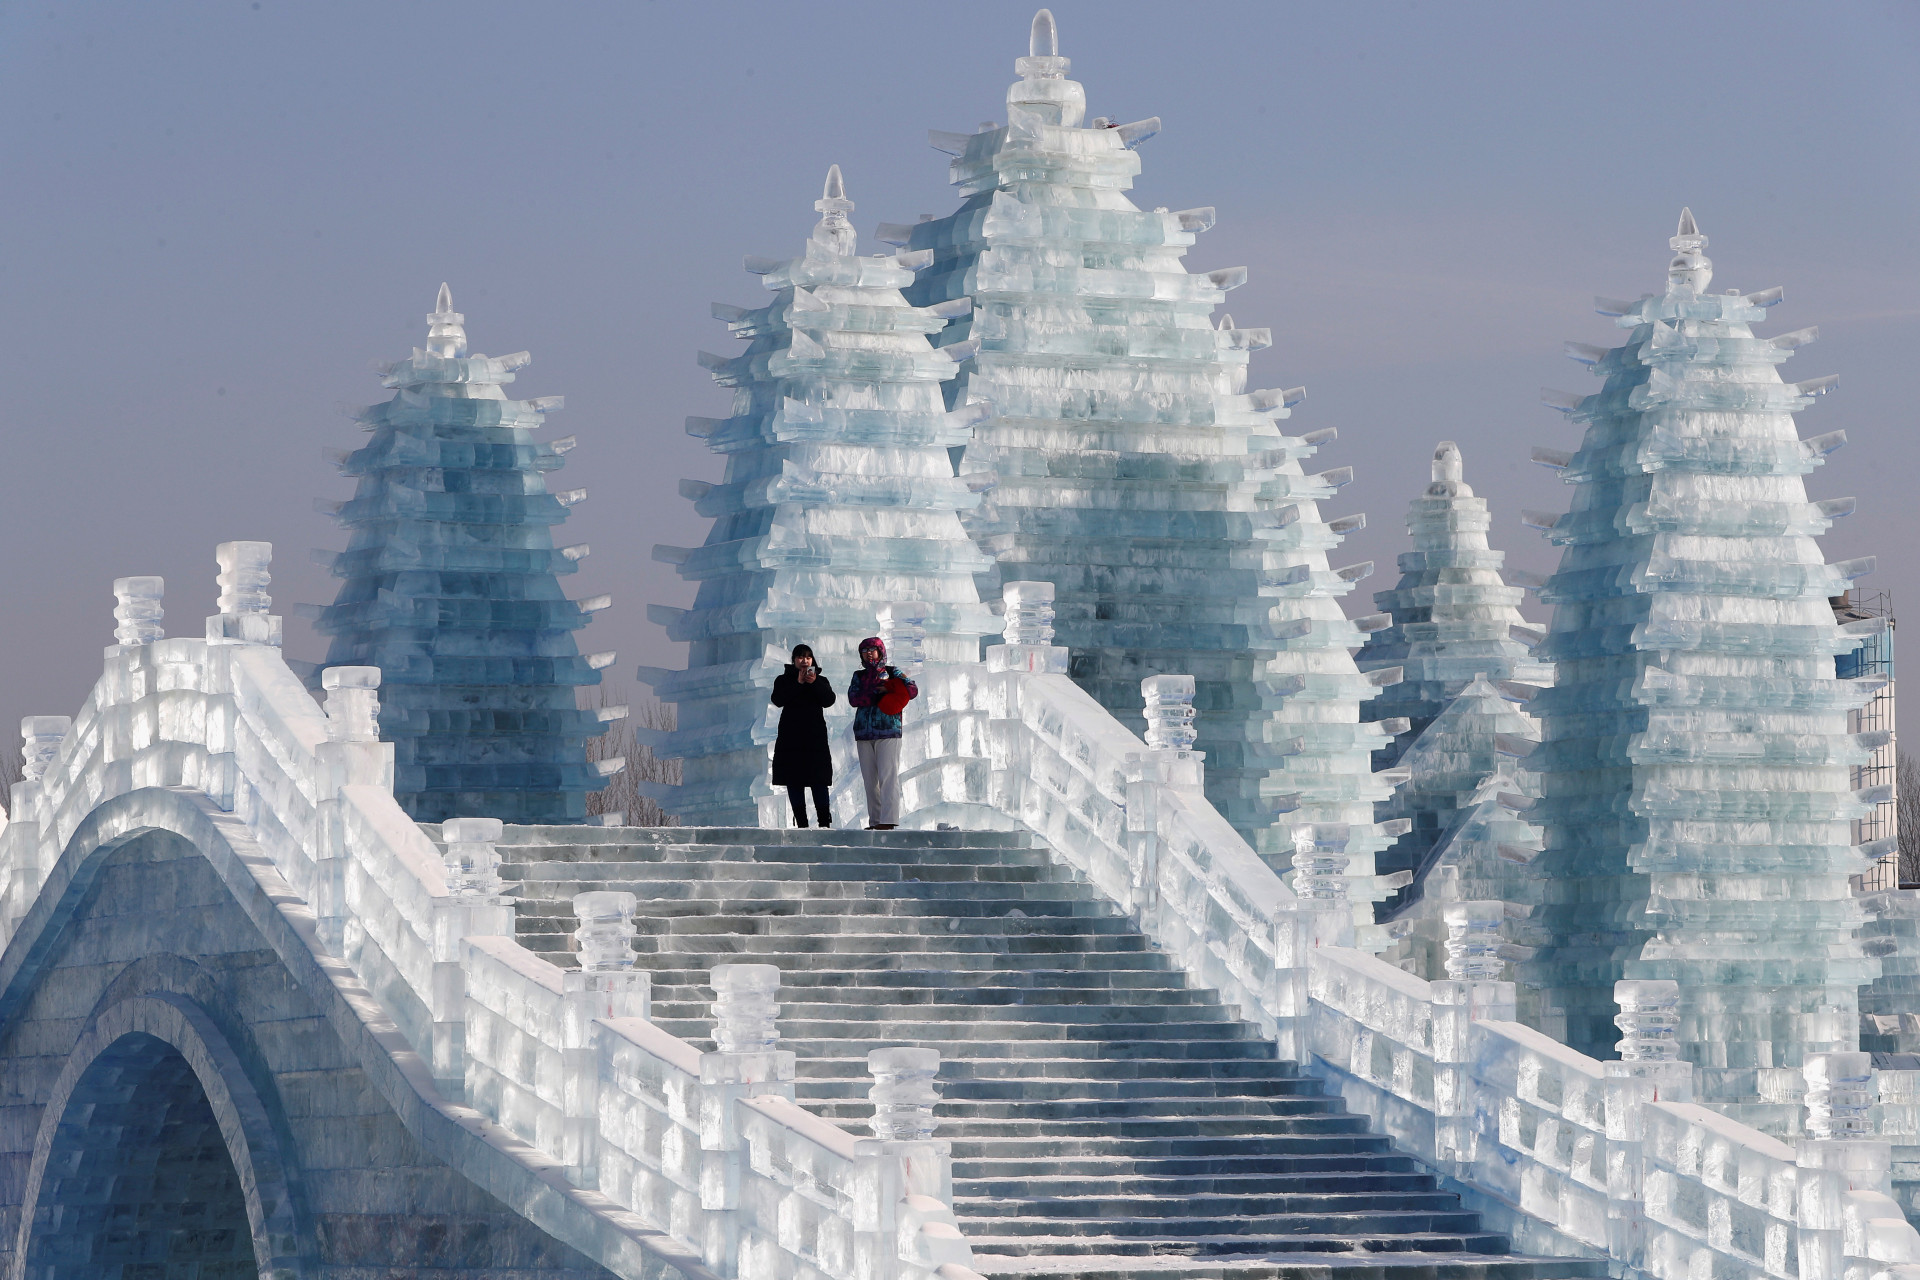 Харбинский Международный фестиваль льда и снега. Ледовый фестиваль в Харбине. Ледяной город в Китае Харбин. Фестиваль ледяных скульптур в Харбине. Айс город